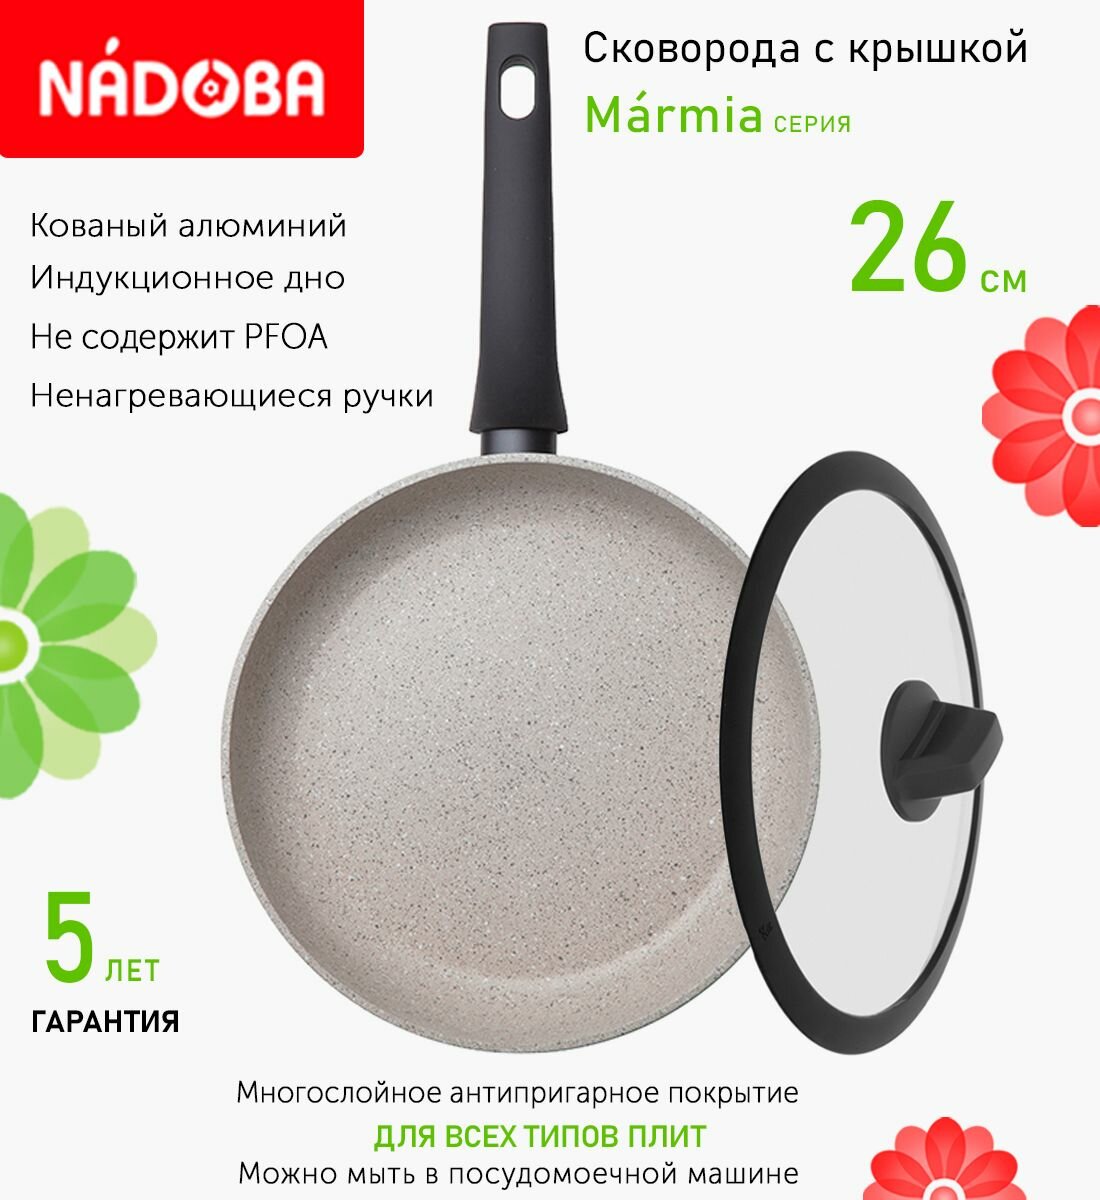 Сковорода с крышкой NADOBA 26см, серия "Marmia" (арт. 728317/751612)